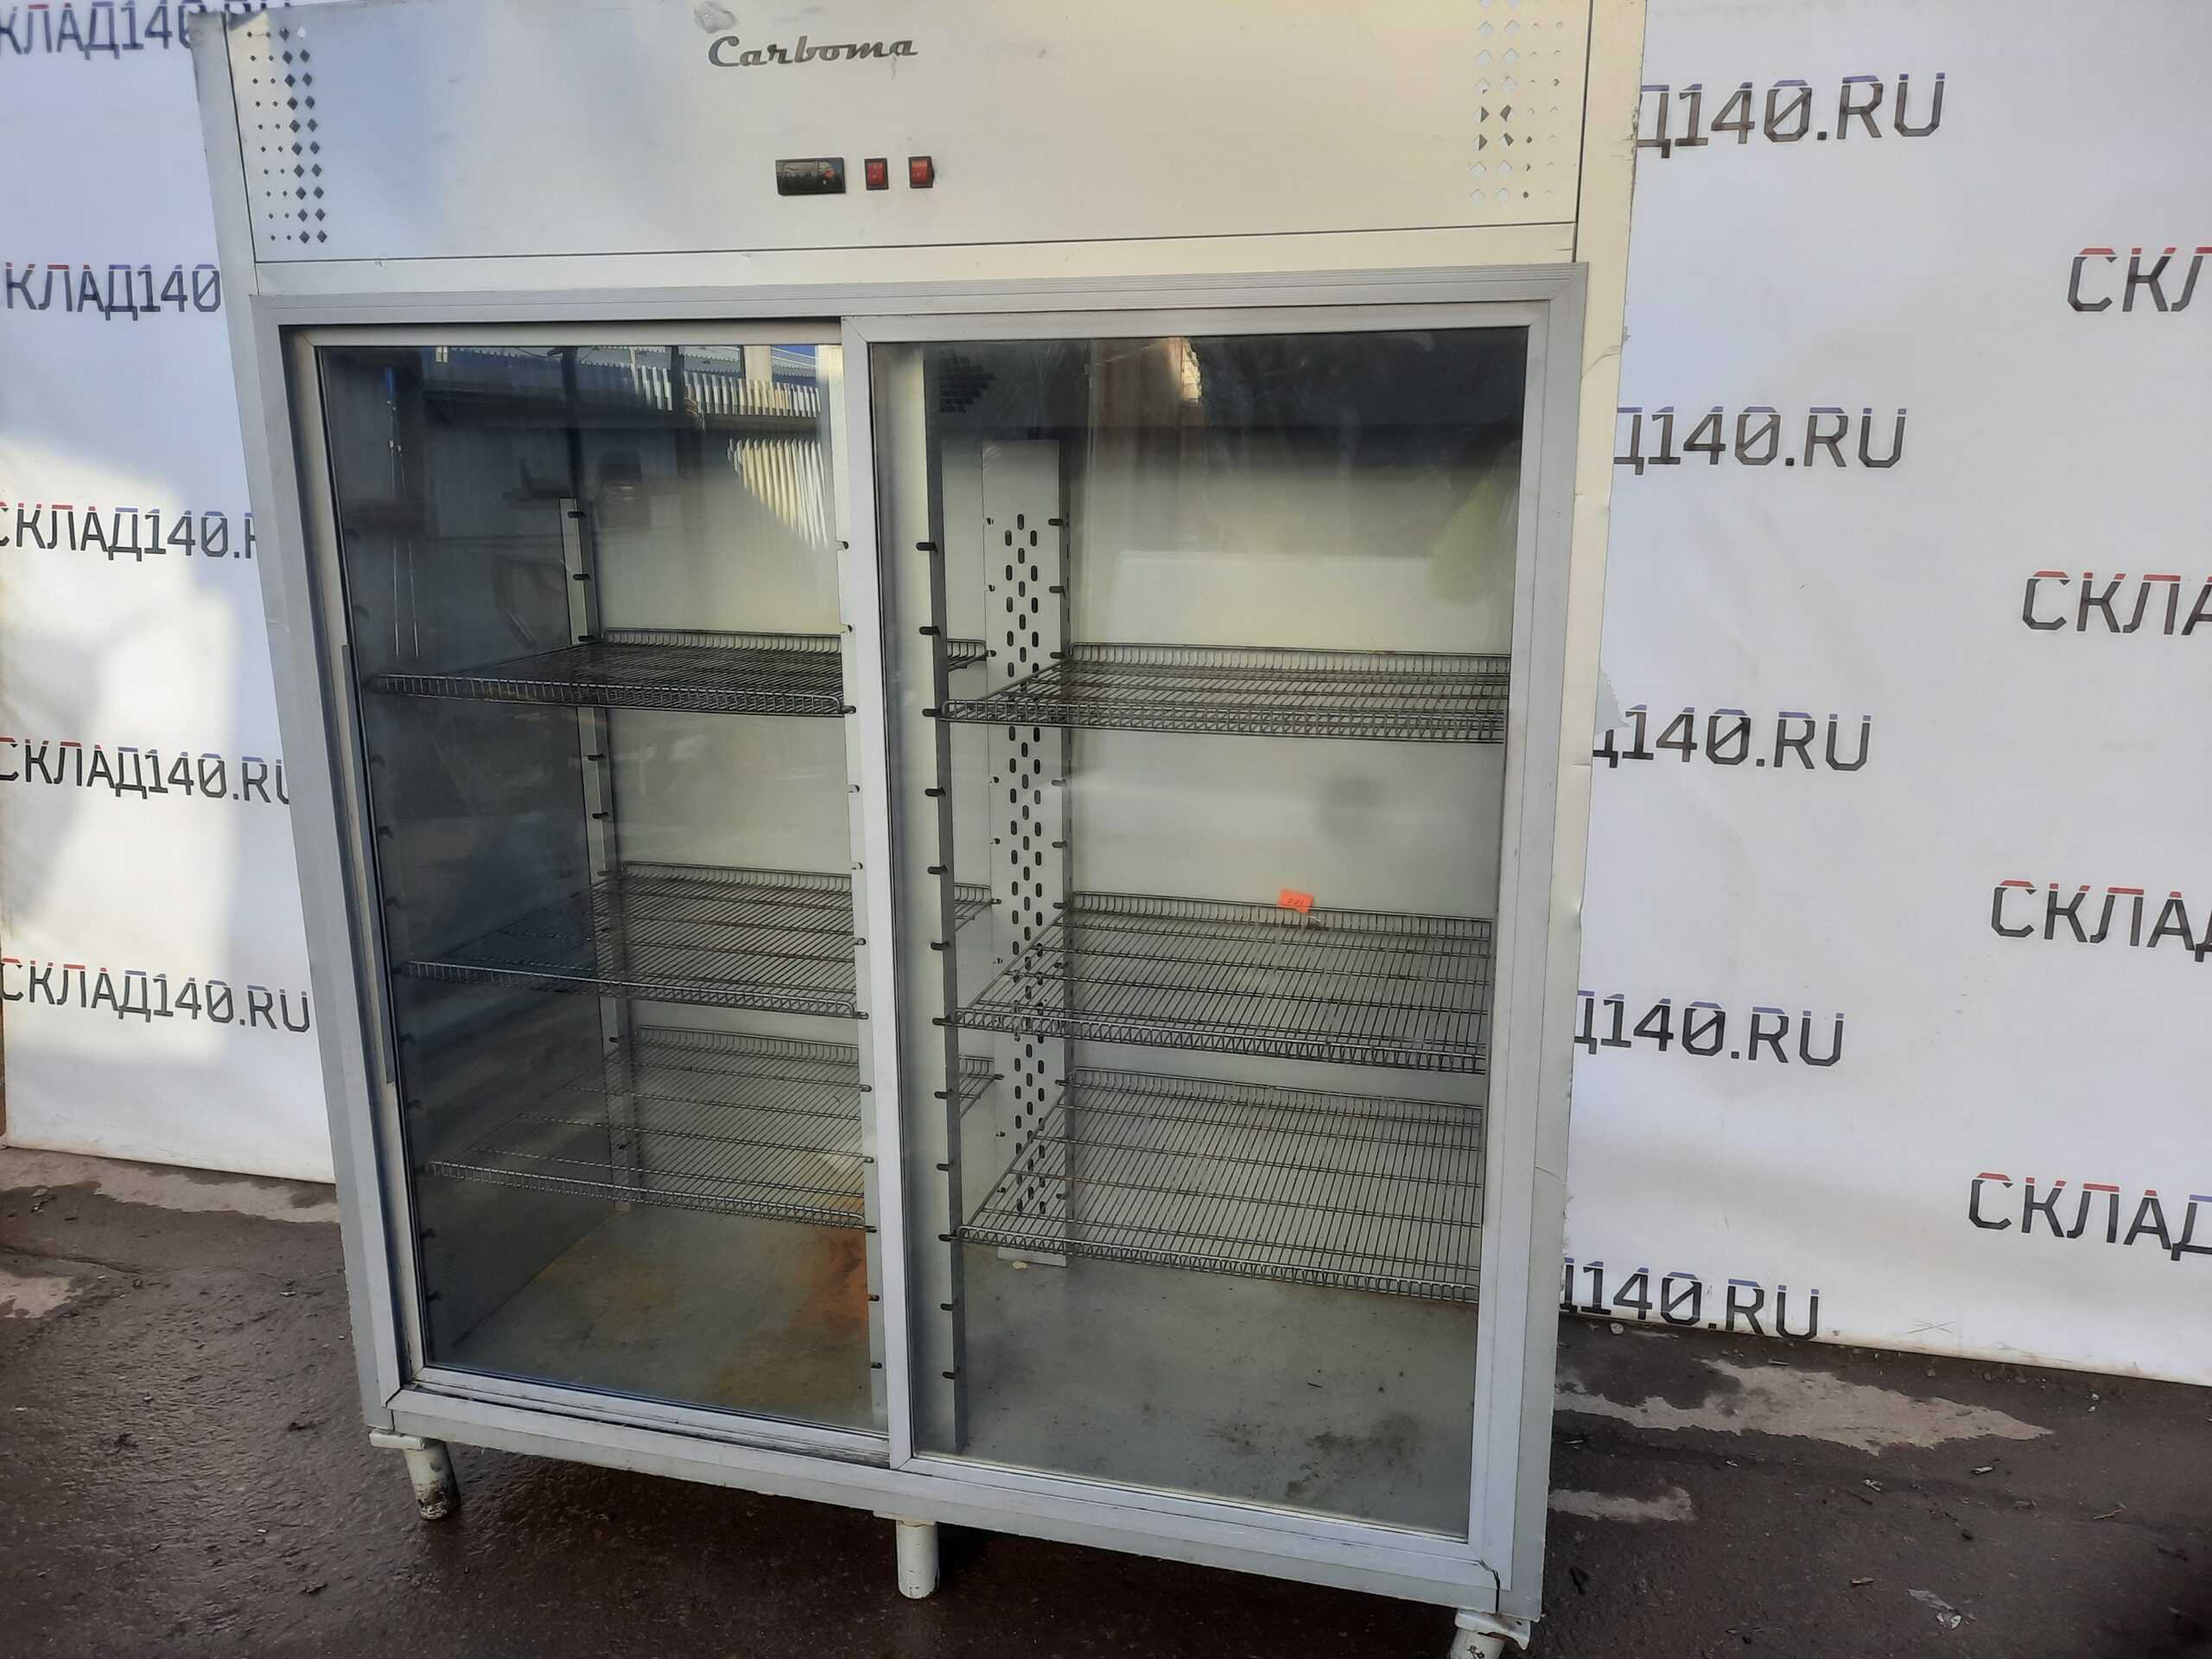 R 1400. Шкаф холодильный Carboma r1400. Шкаф холодильный Carboma f1400. Шкаф морозильный Carboma f700. R1400к Carboma выпариватель.